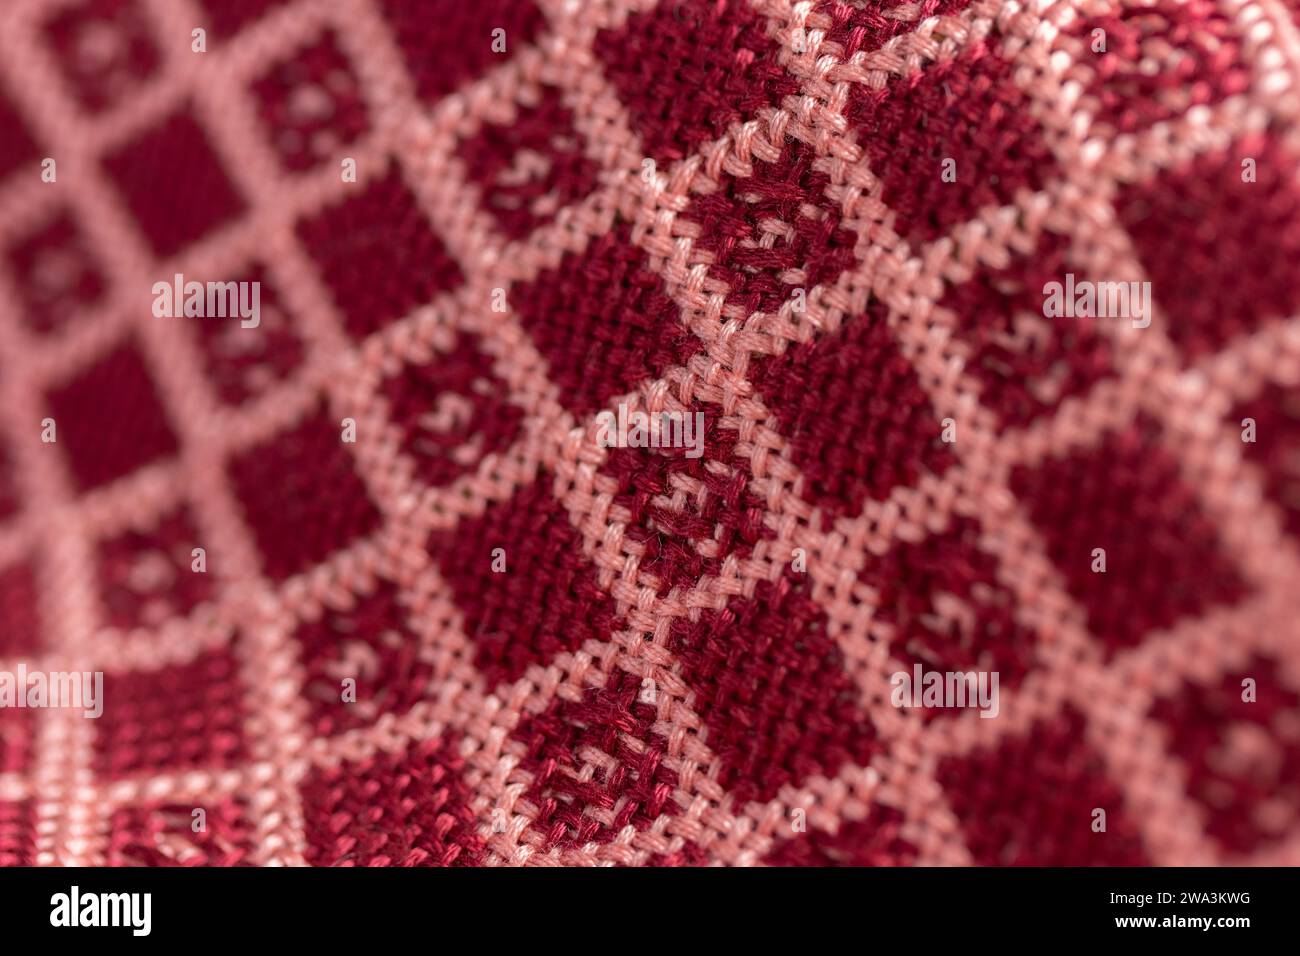 doppio panno in tessuto drappeggiato geometrico rosso e rosa, motivo a griglia diamantato, foto di dettaglio macro ravvicinato con profondità di campo ridotta Foto Stock